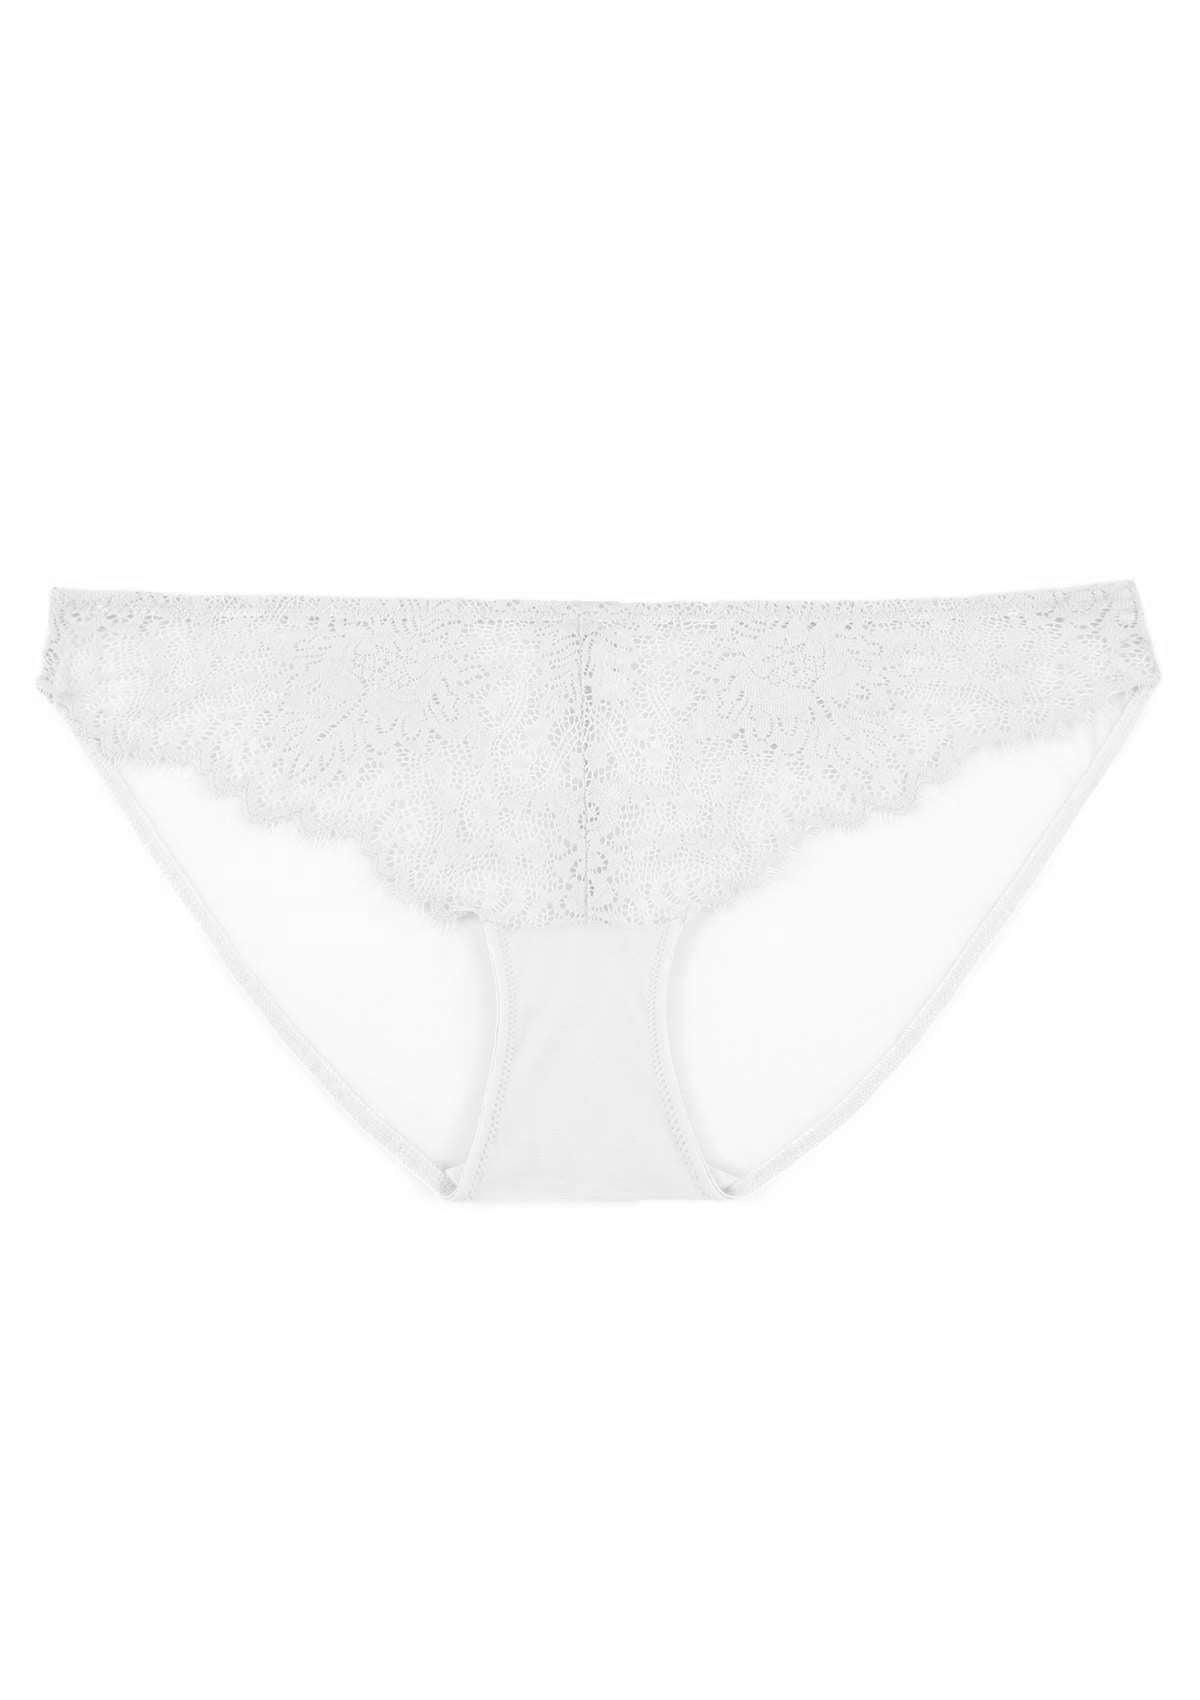 HSIA Sunflower Exquisite White Lace Bikini Underwear - M / High-Rise Brief / White